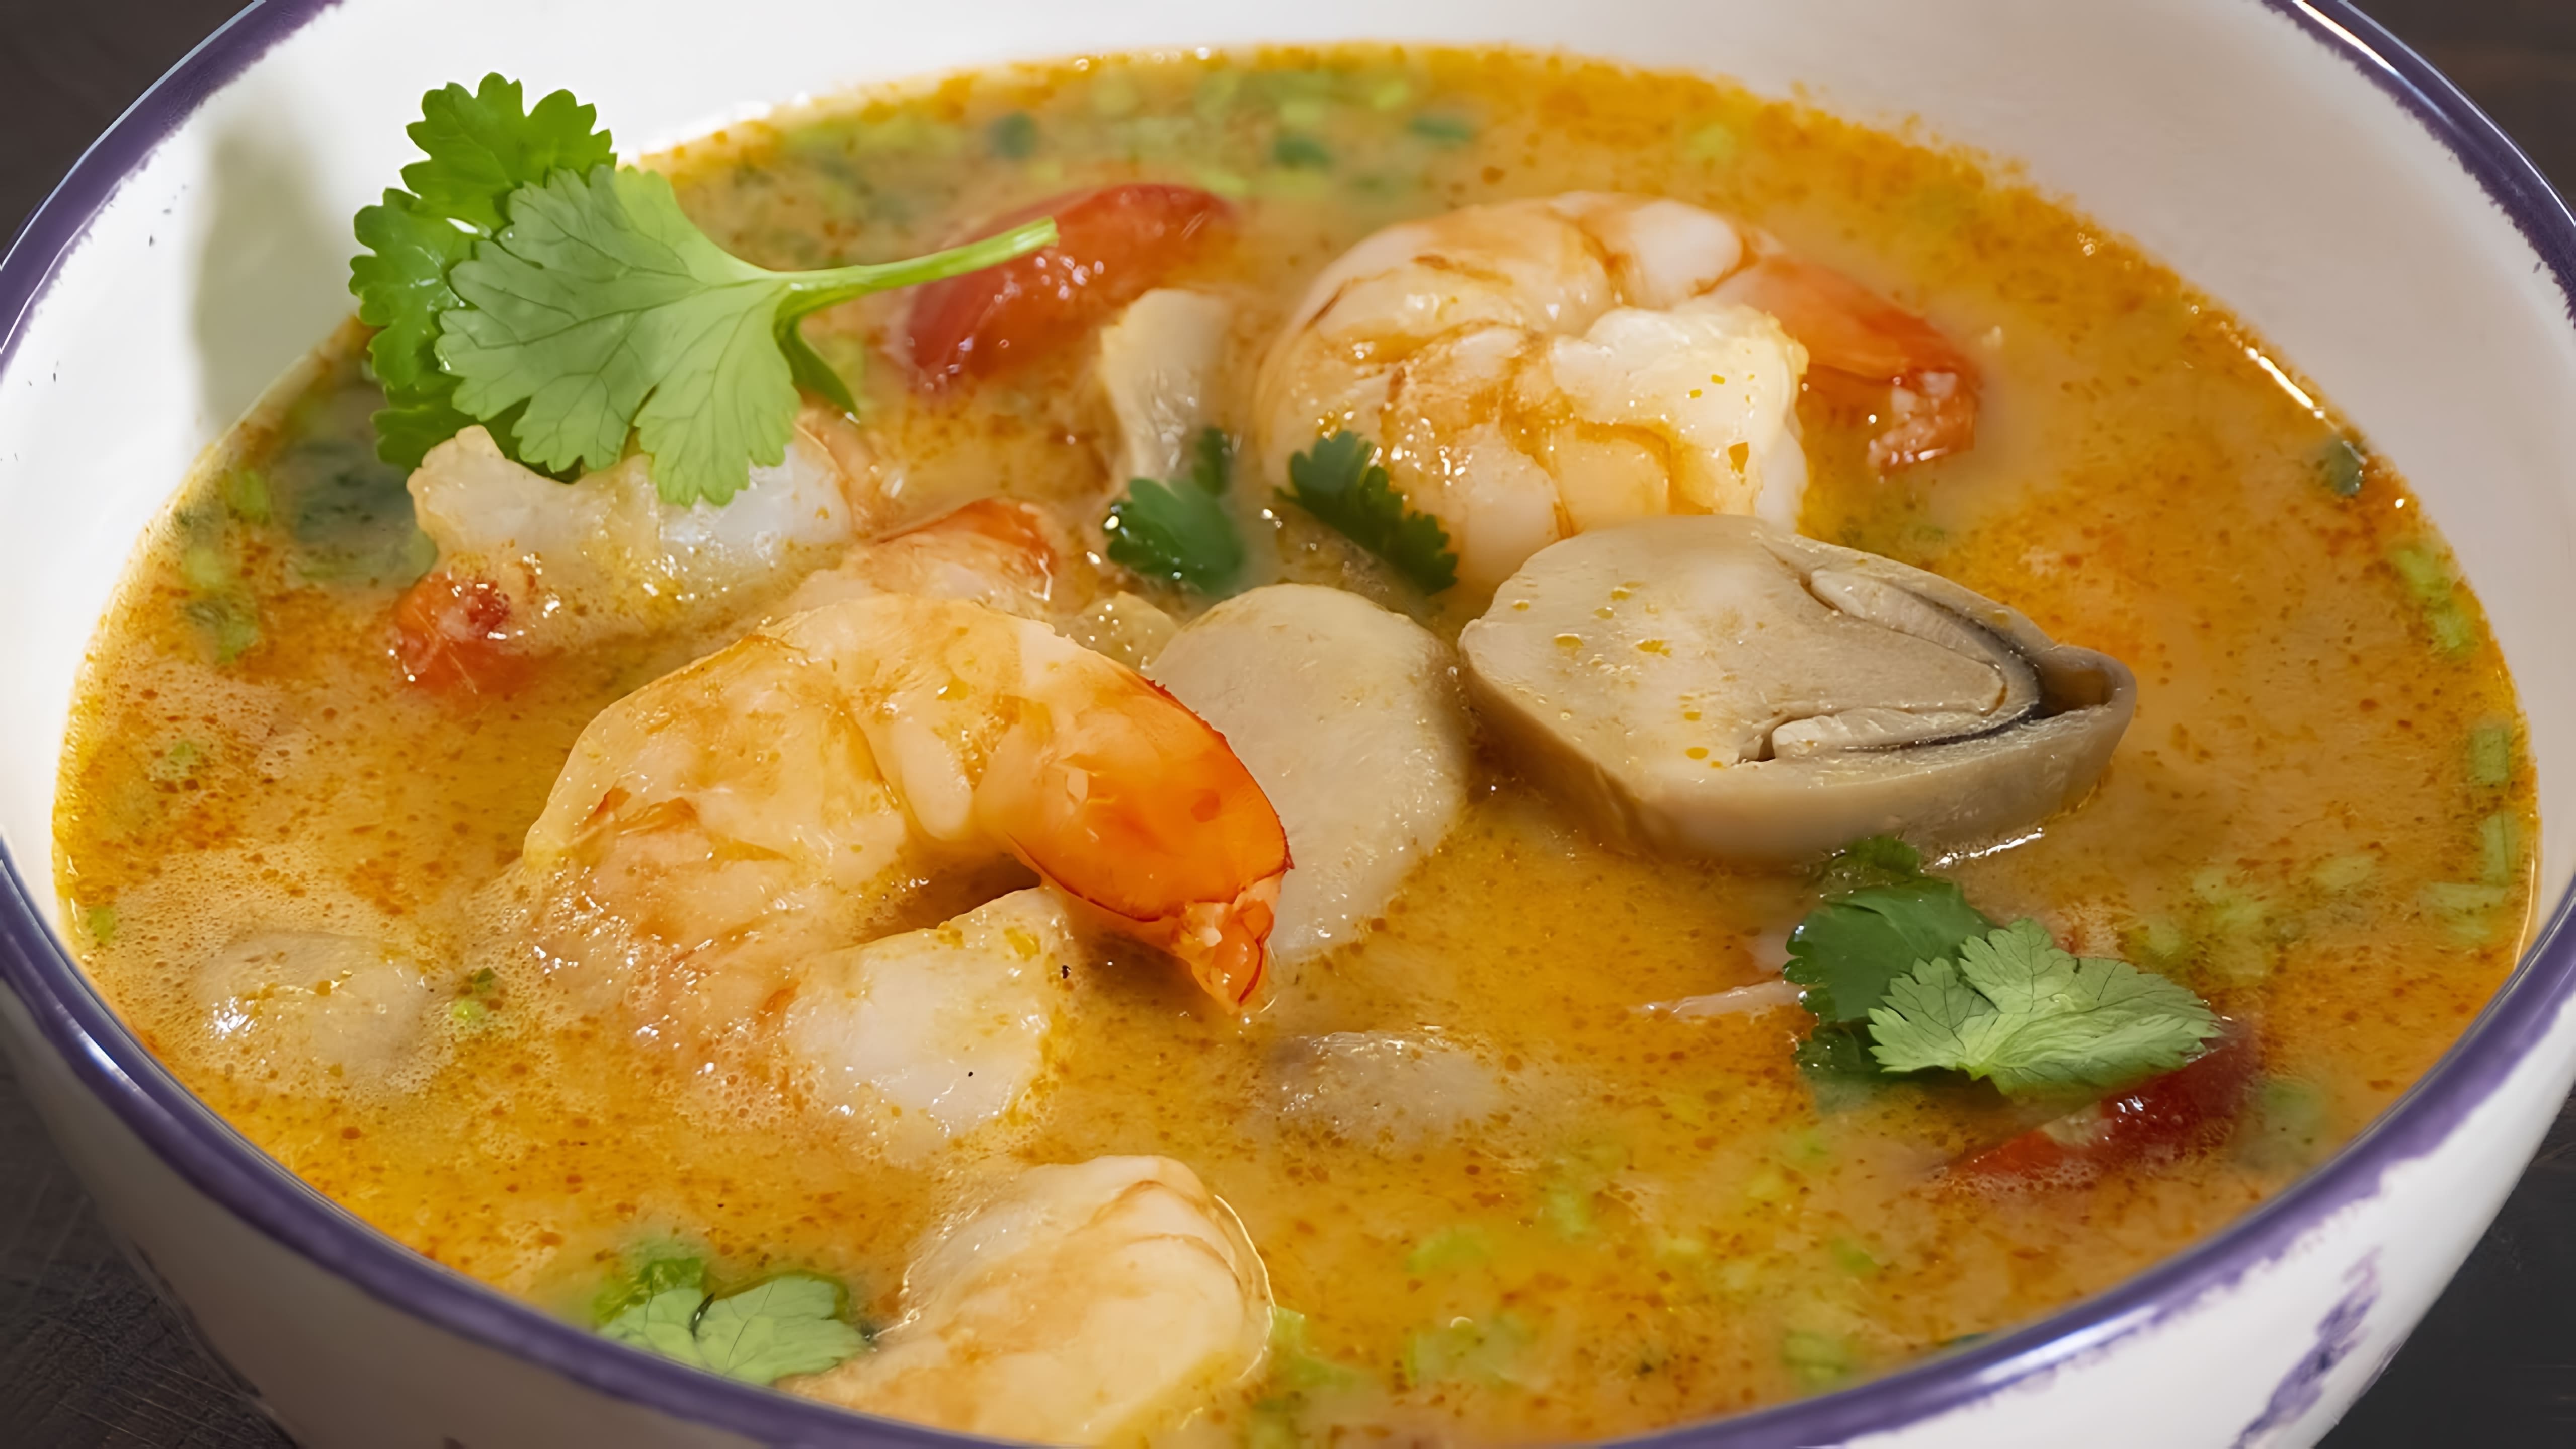 В этом видео демонстрируется рецепт приготовления супа Том Ям за 20 минут